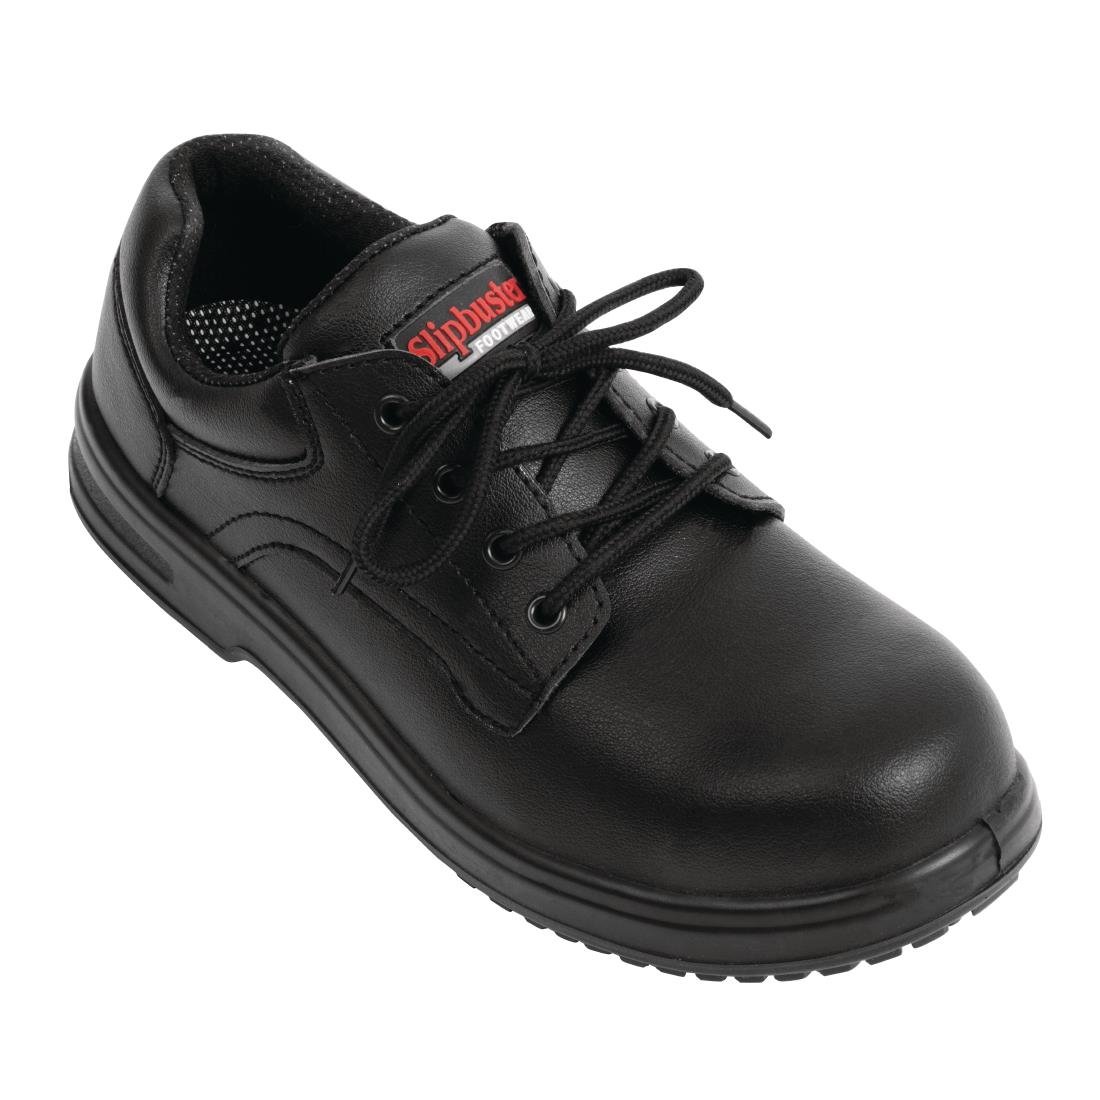 BB498-37 Slipbuster Basic Shoes Slip Resistant Black 37 JD Catering Equipment Solutions Ltd